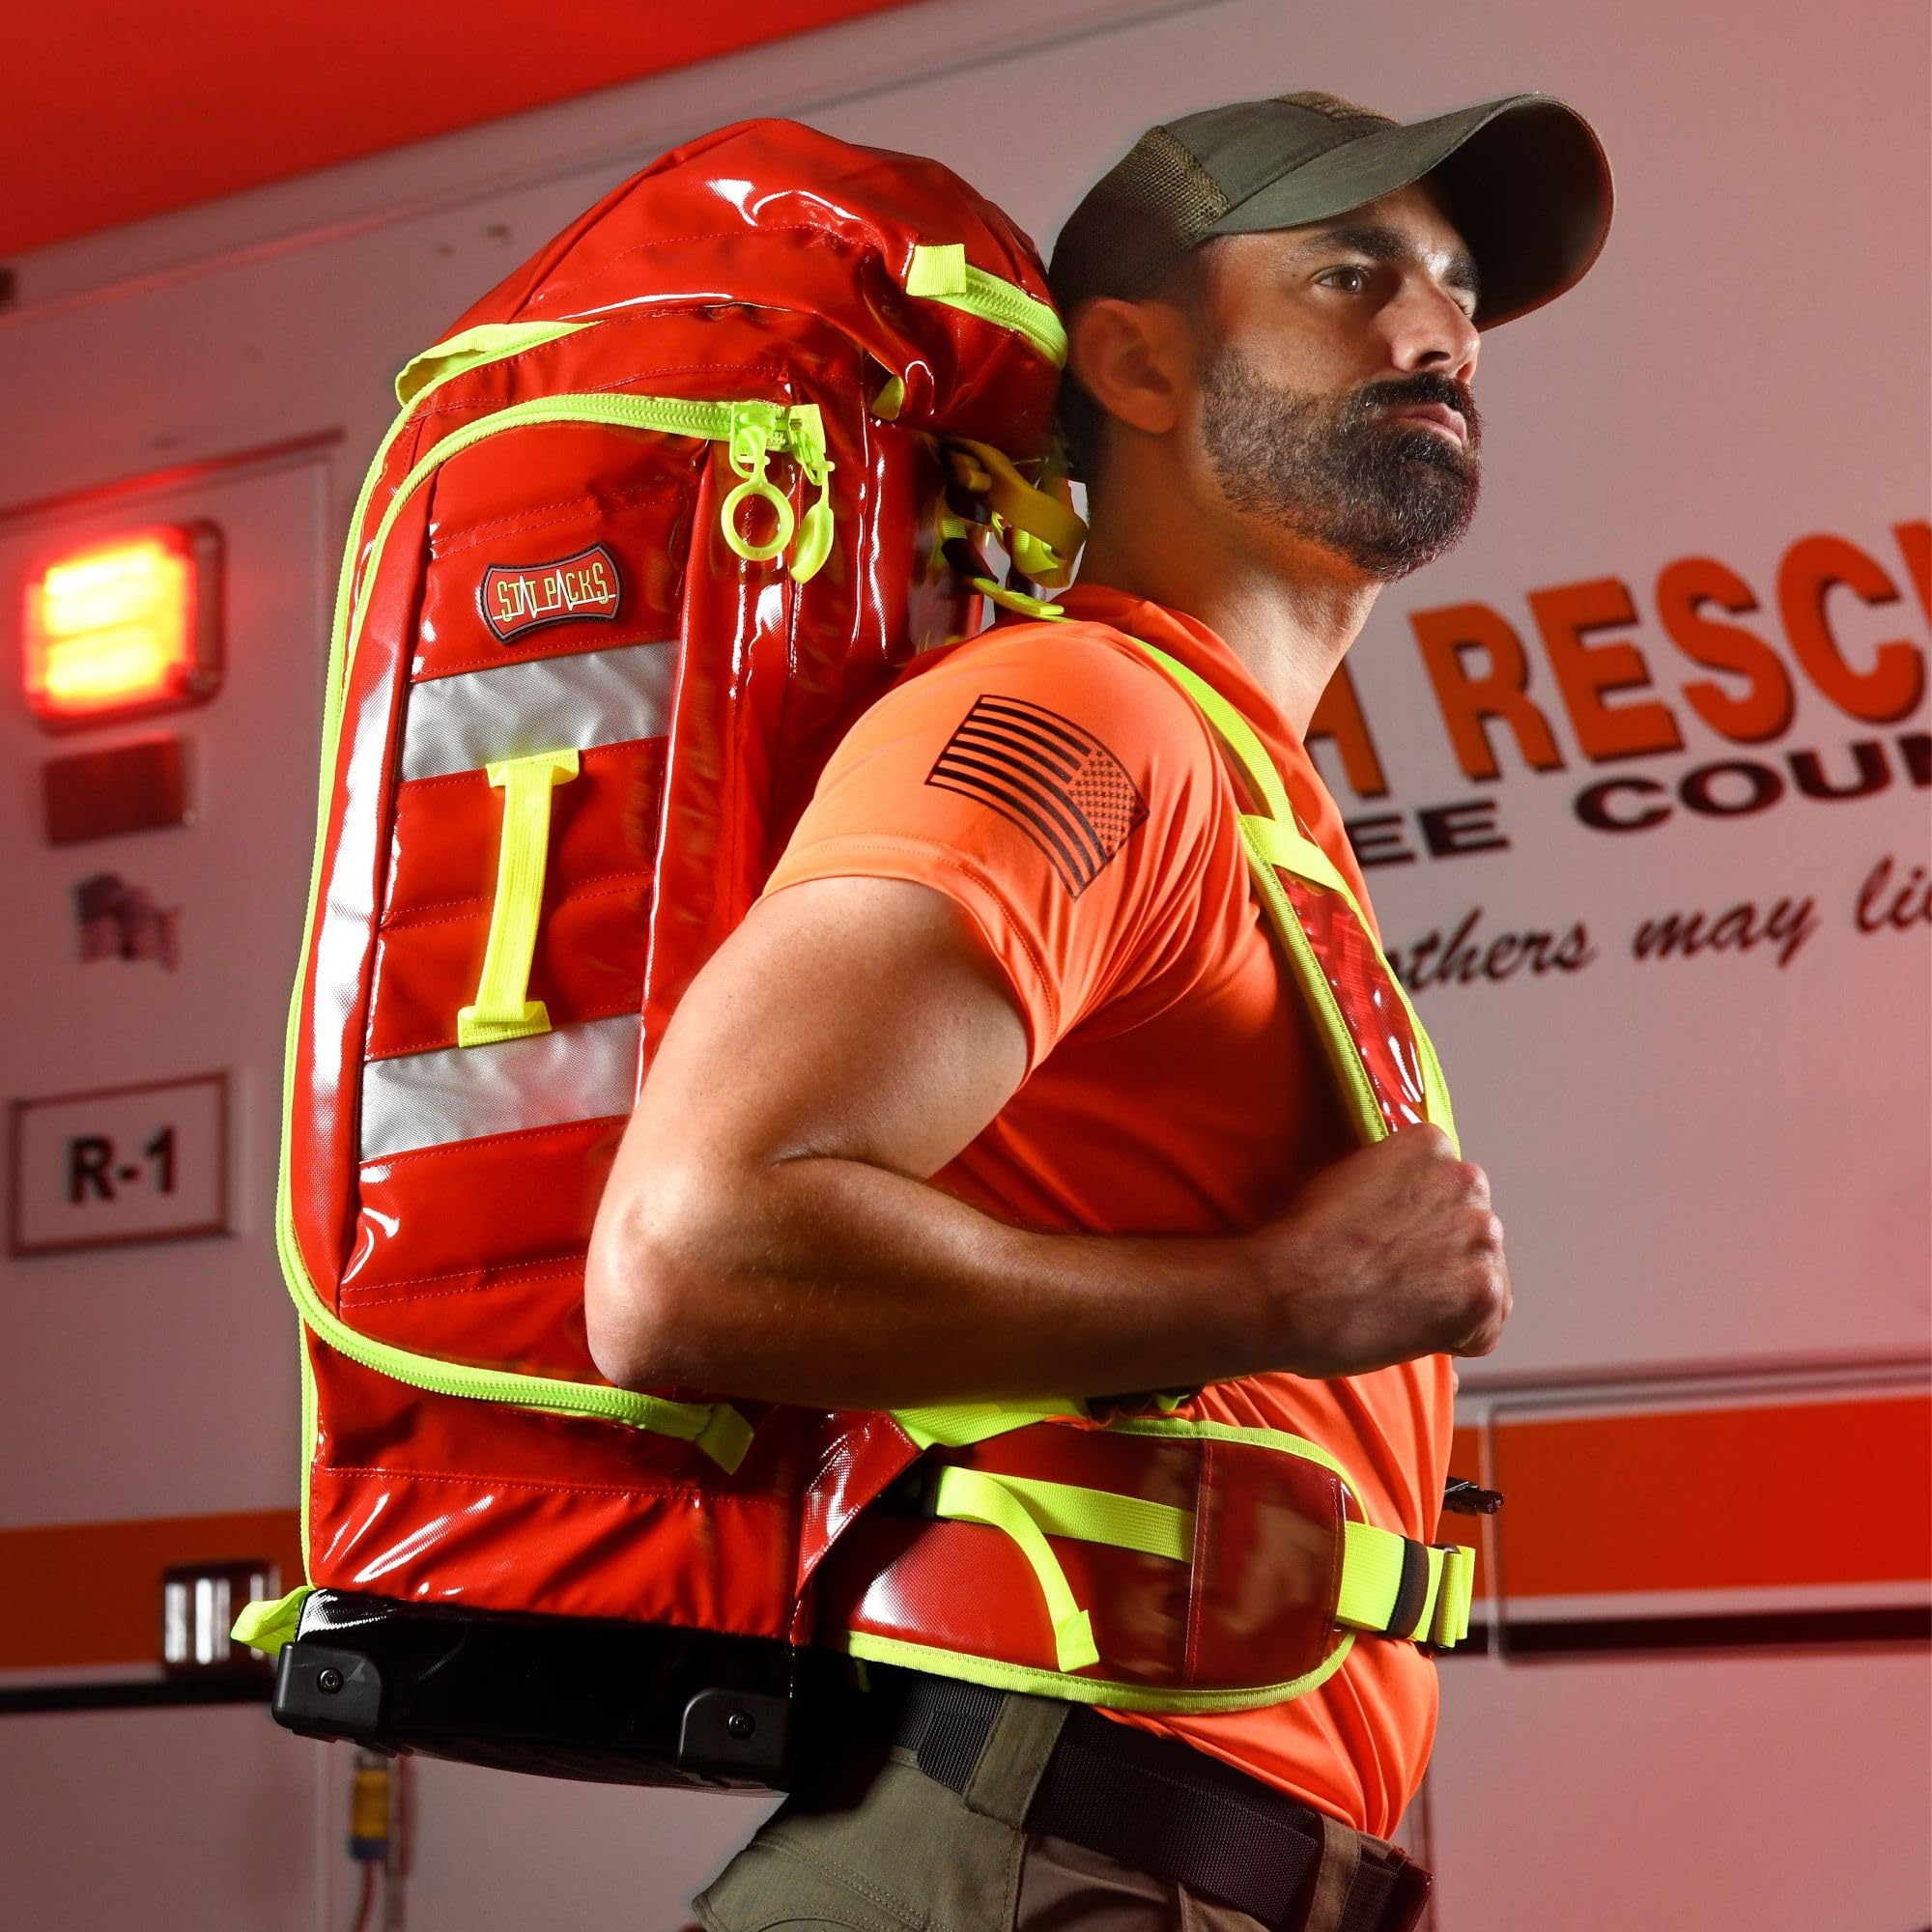 Statpacks New 2023 G3+ Backup Red EMT Medic Backpack BLS ALS Trauma Bag for EMS, Police, Firefighters